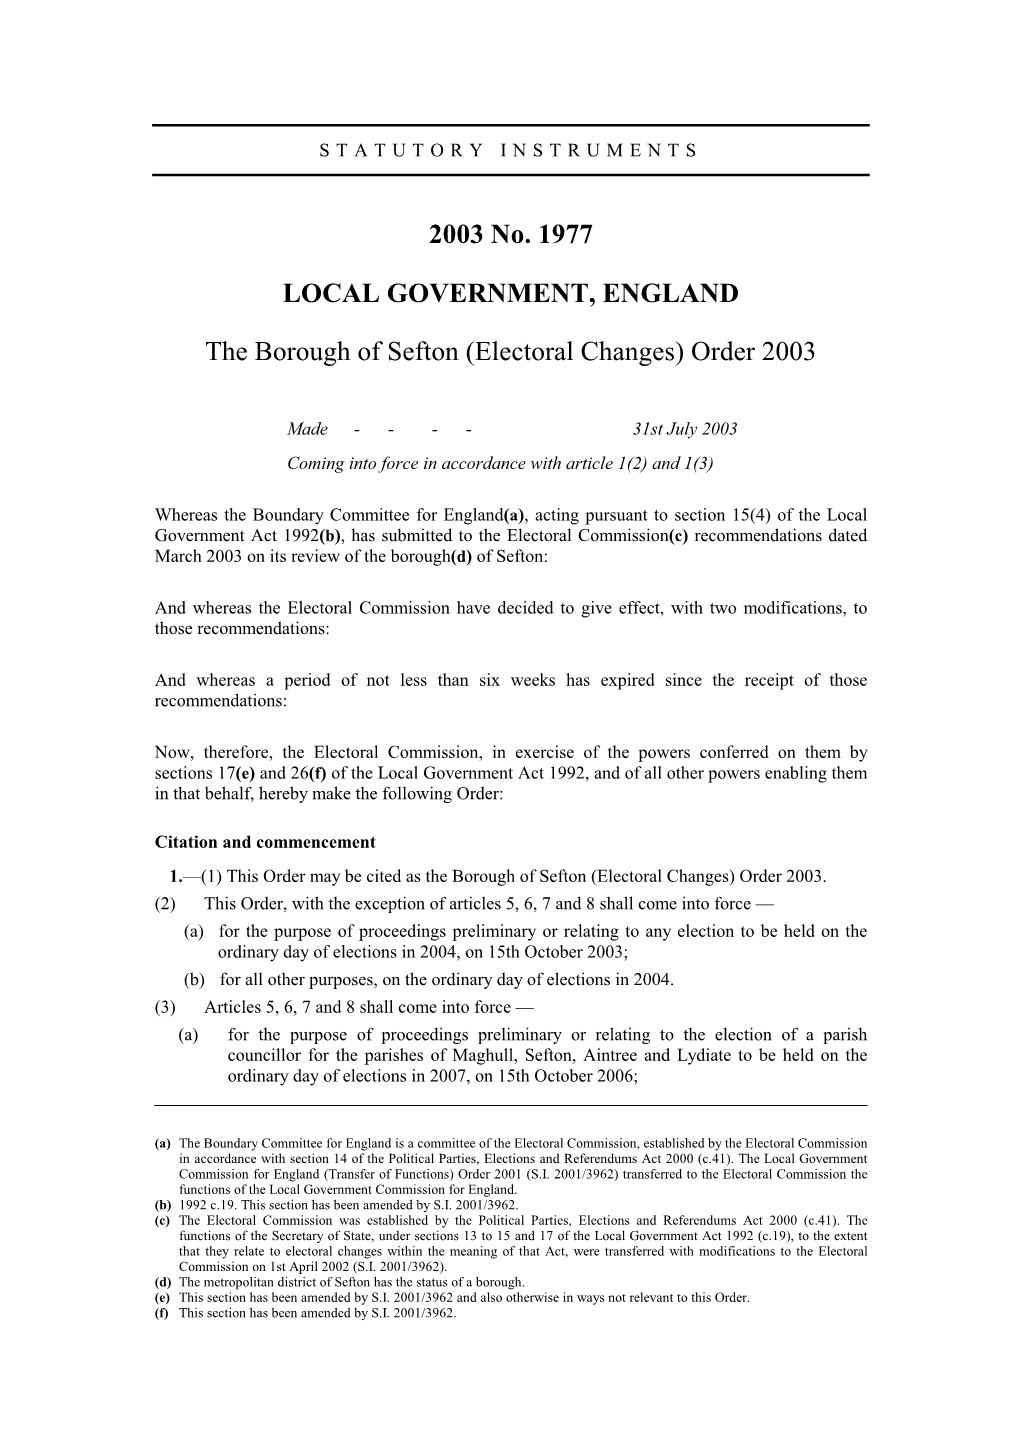 (Electoral Changes) Order 2003